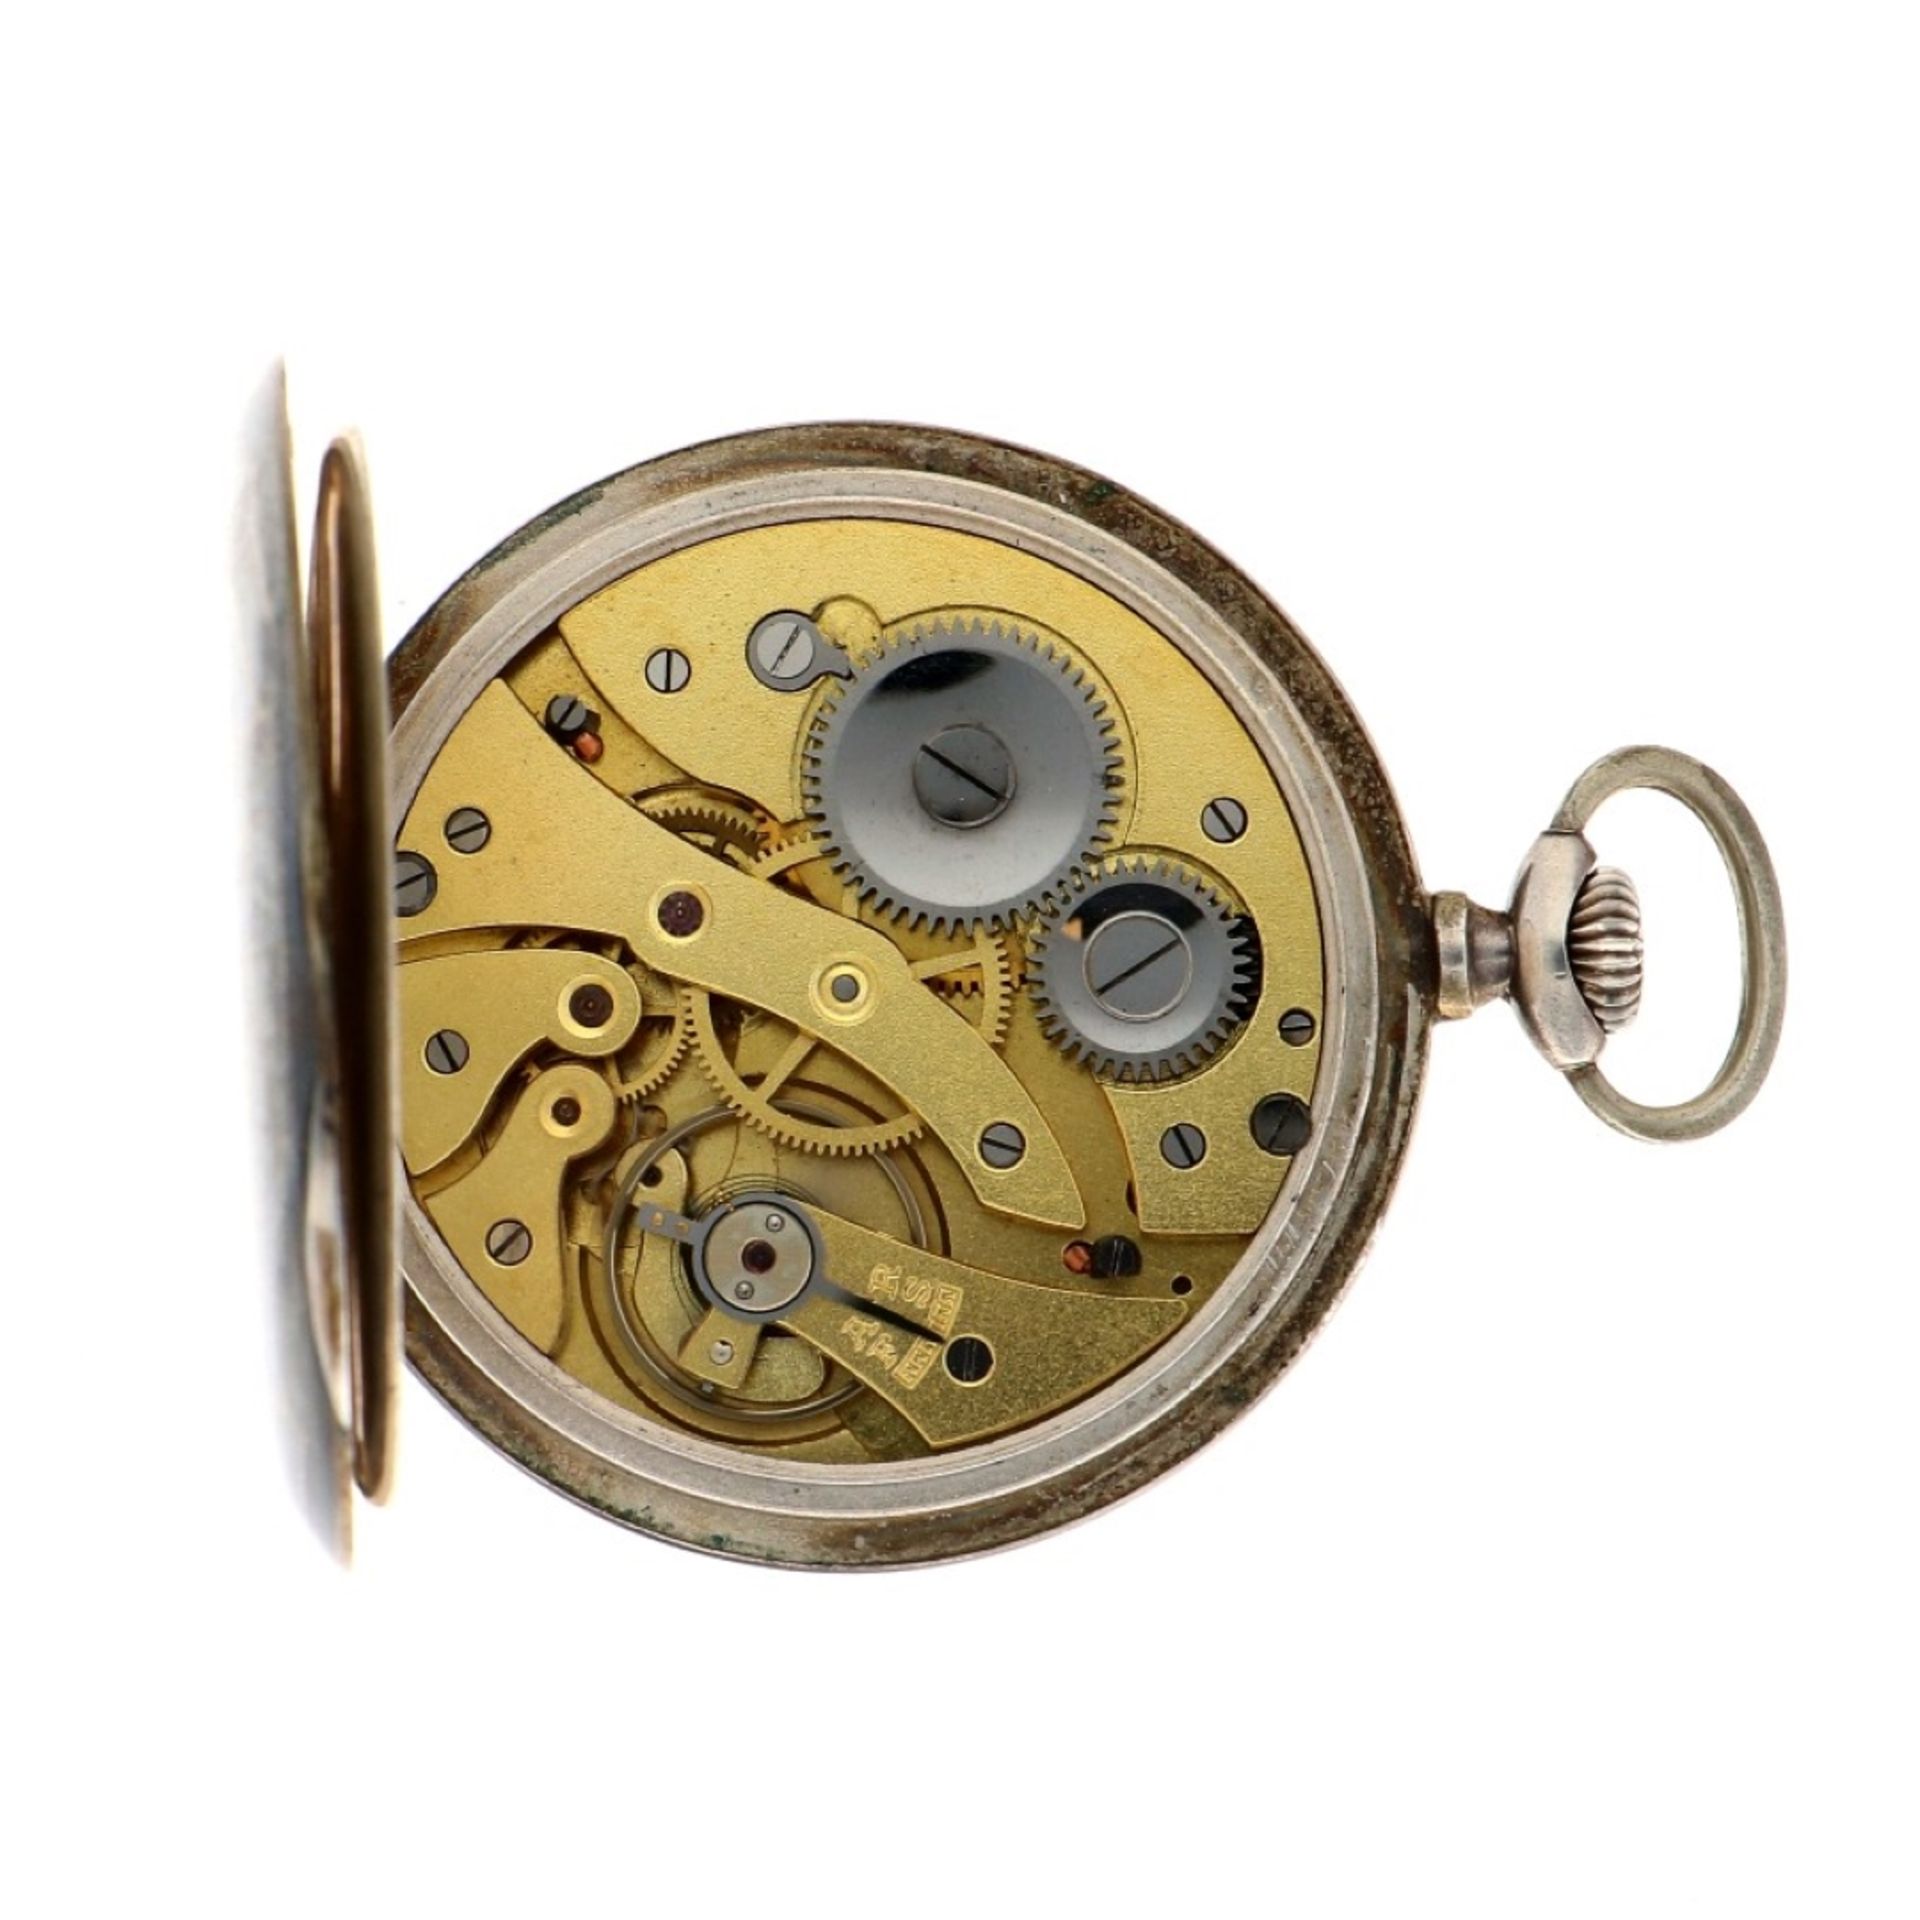 No Reserve - Zena Chronomètre Lever-Escapement silver 800/1000 - Men's pocketwatch. - Bild 3 aus 5